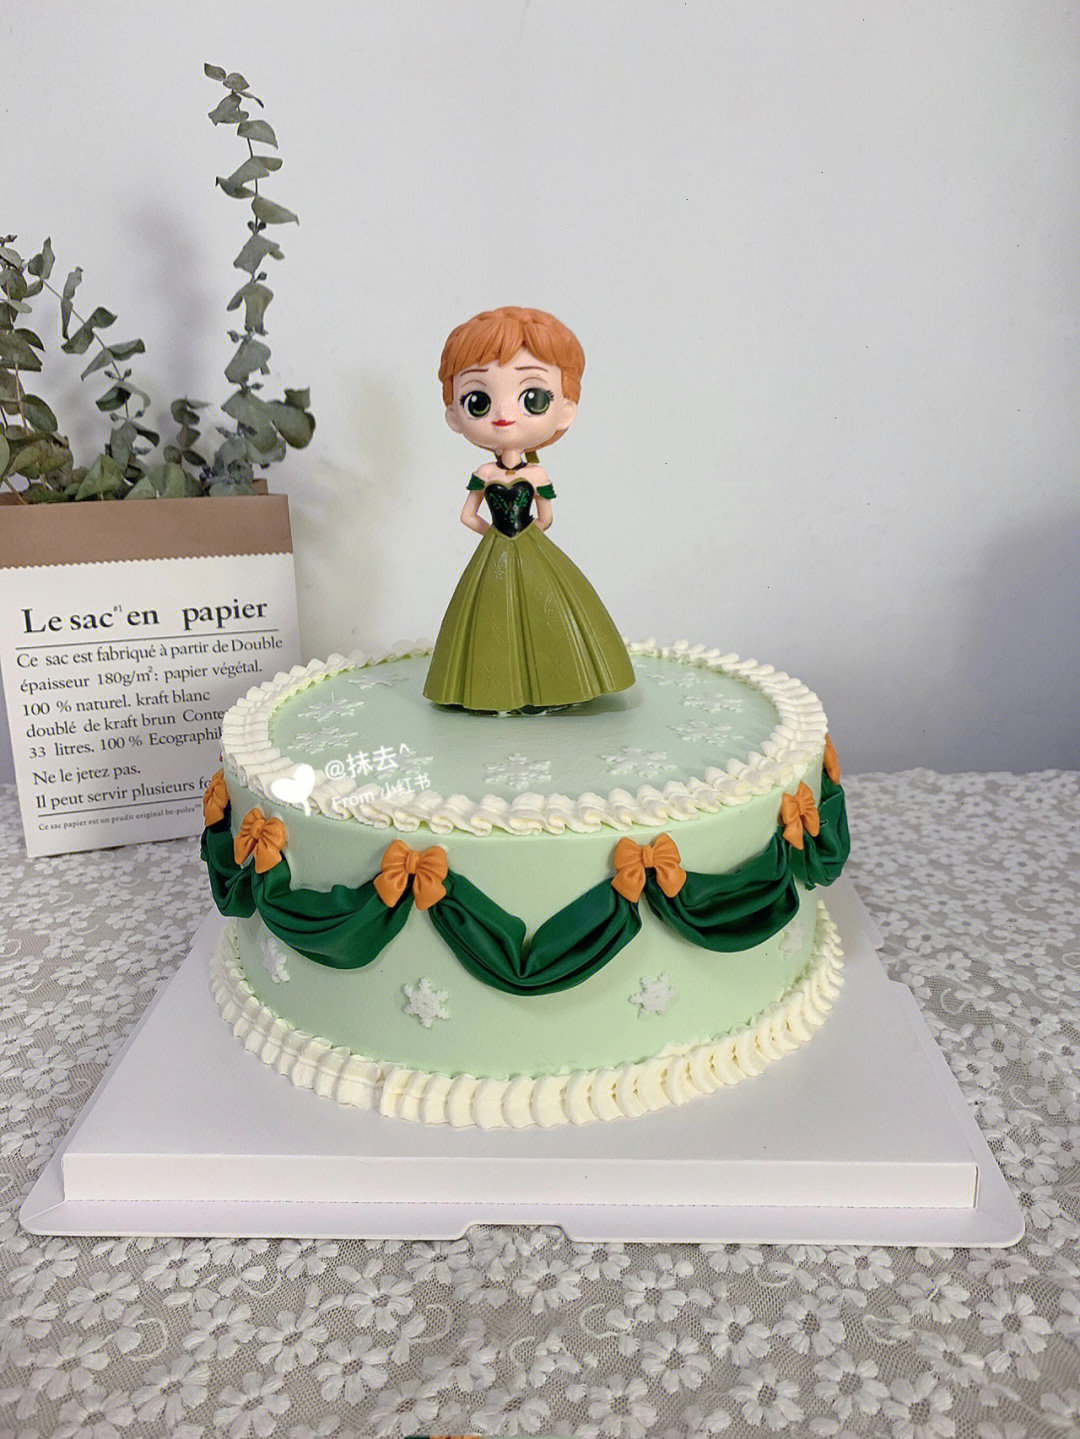 公主蛋糕,安娜公主蛋糕,绿色系蛋糕